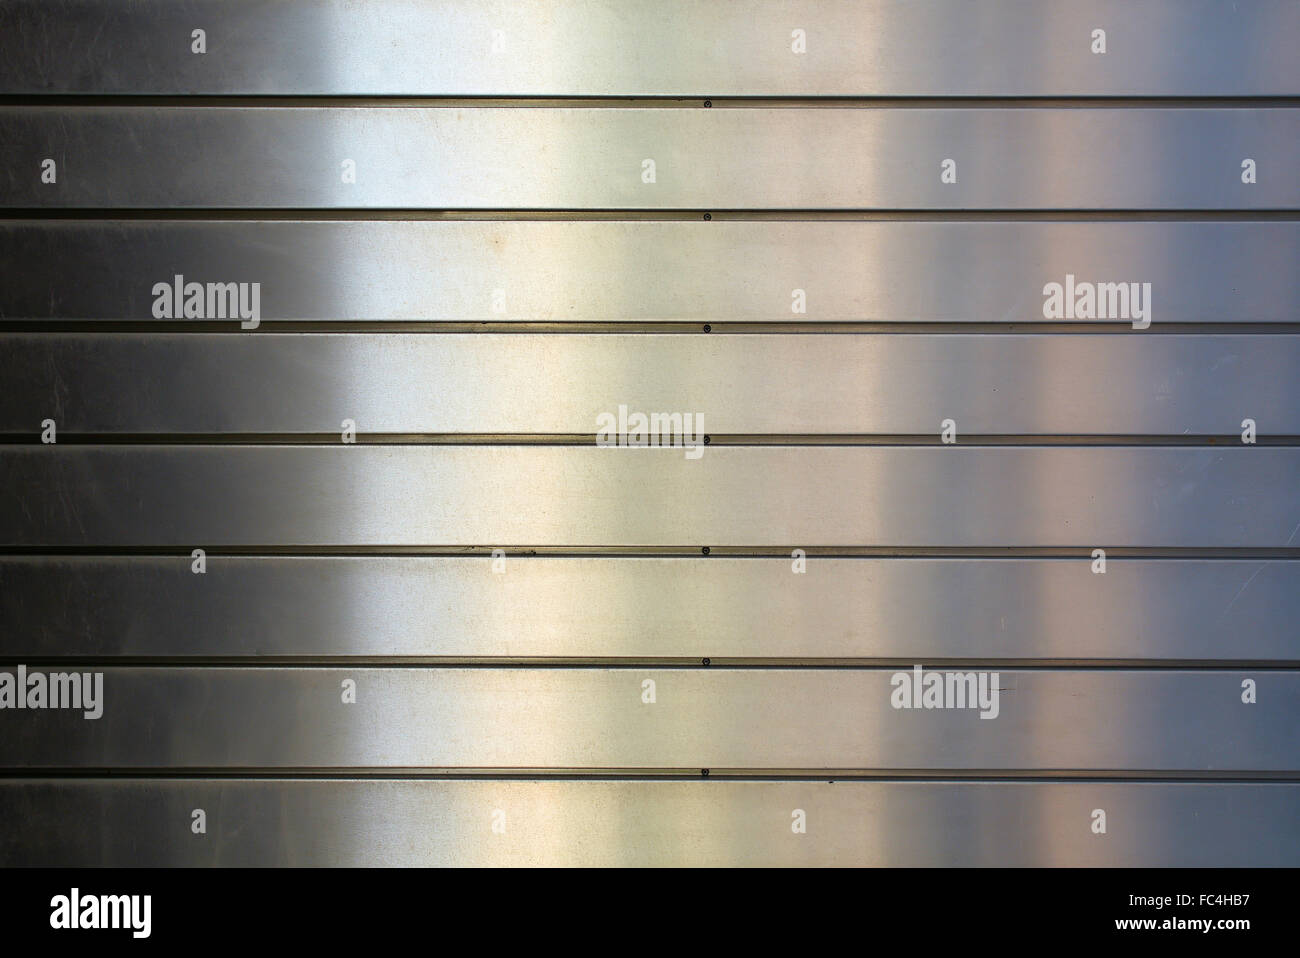 Aluminum facade Stock Photo